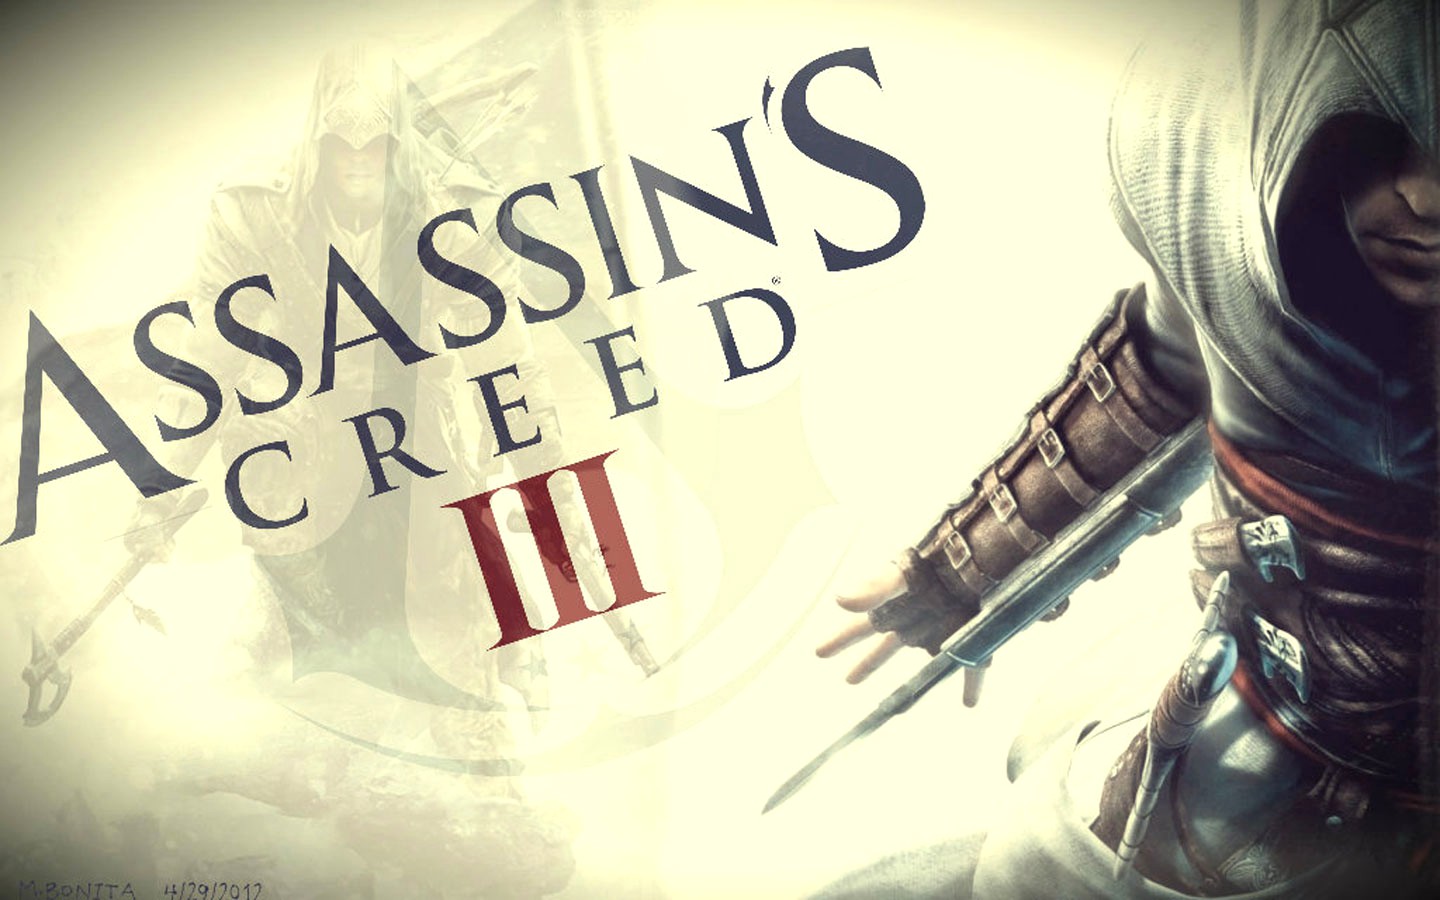 Установка ассасин крид. Assassin's Creed 3 обои. Assassin's Creed 3 театр. Assassins Creed 3 Desmond Miles обой. Assassins Creed 3 [Wii u].